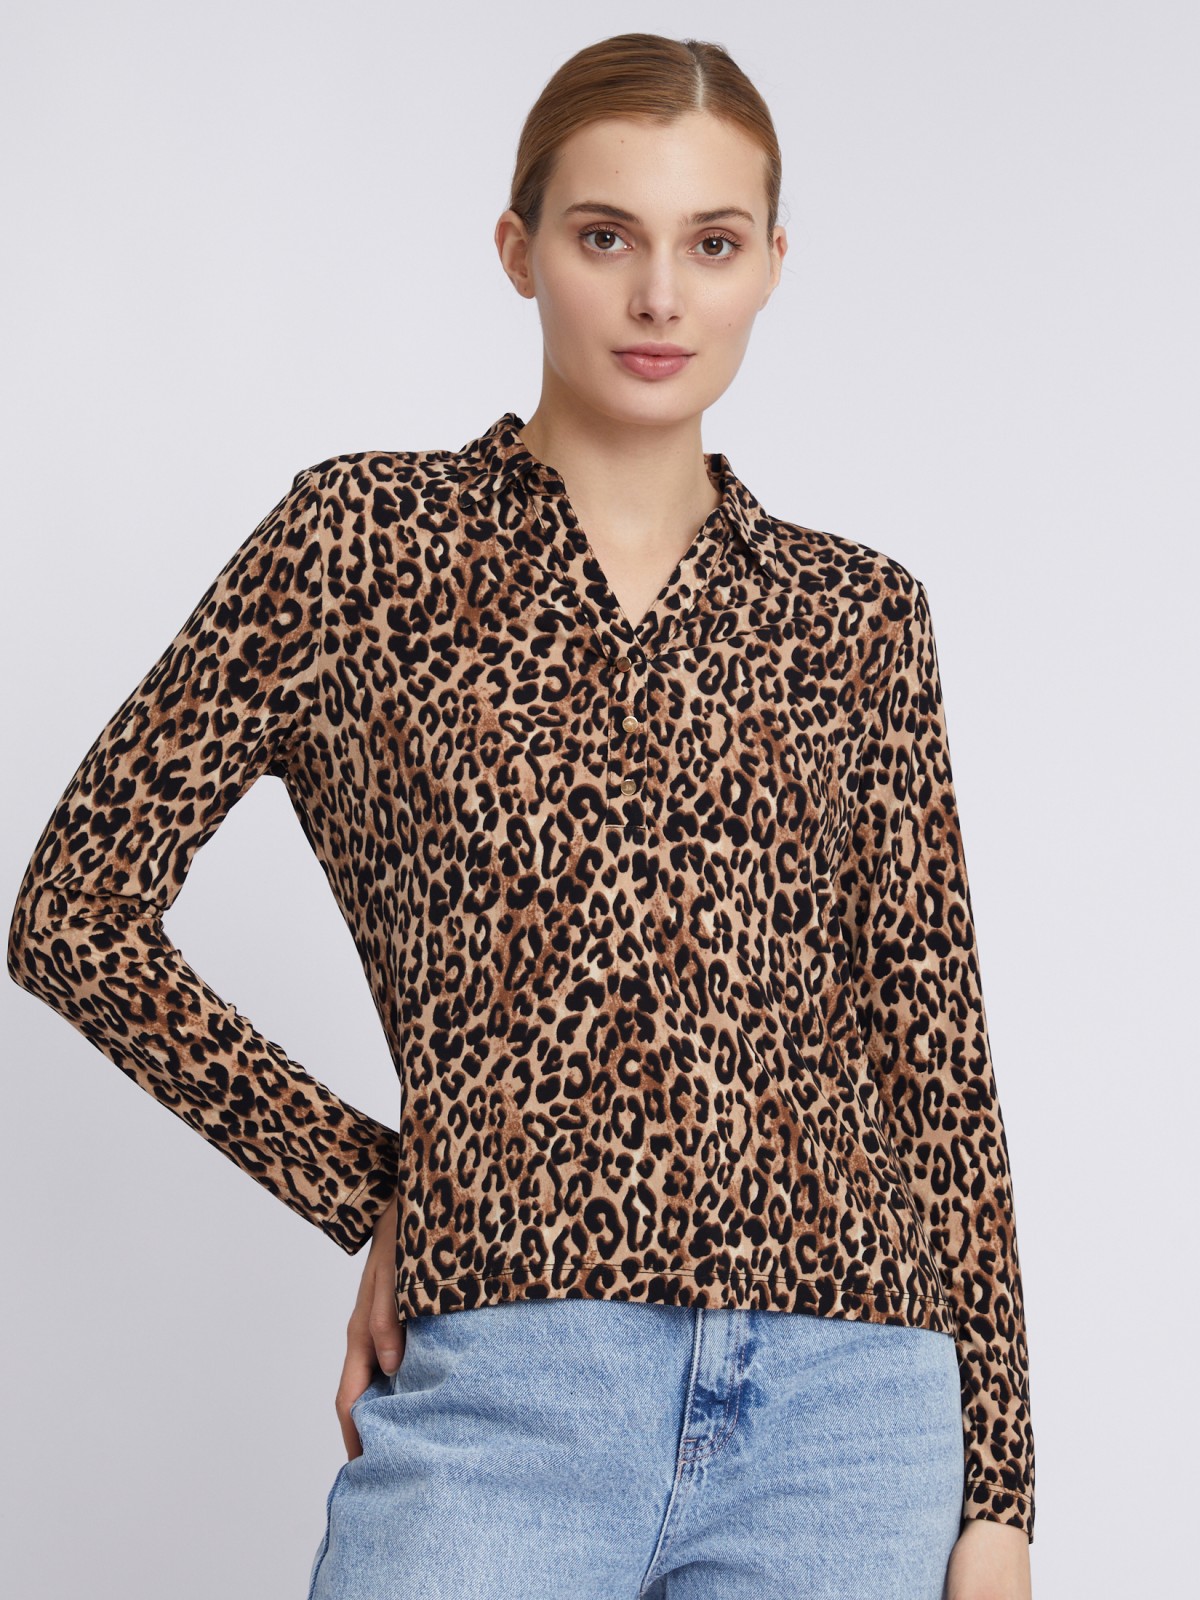 Трикотажная блузка с длинным рукавом и леопардовым принтом zolla 023311152513, цвет бежевый, размер S - фото 5